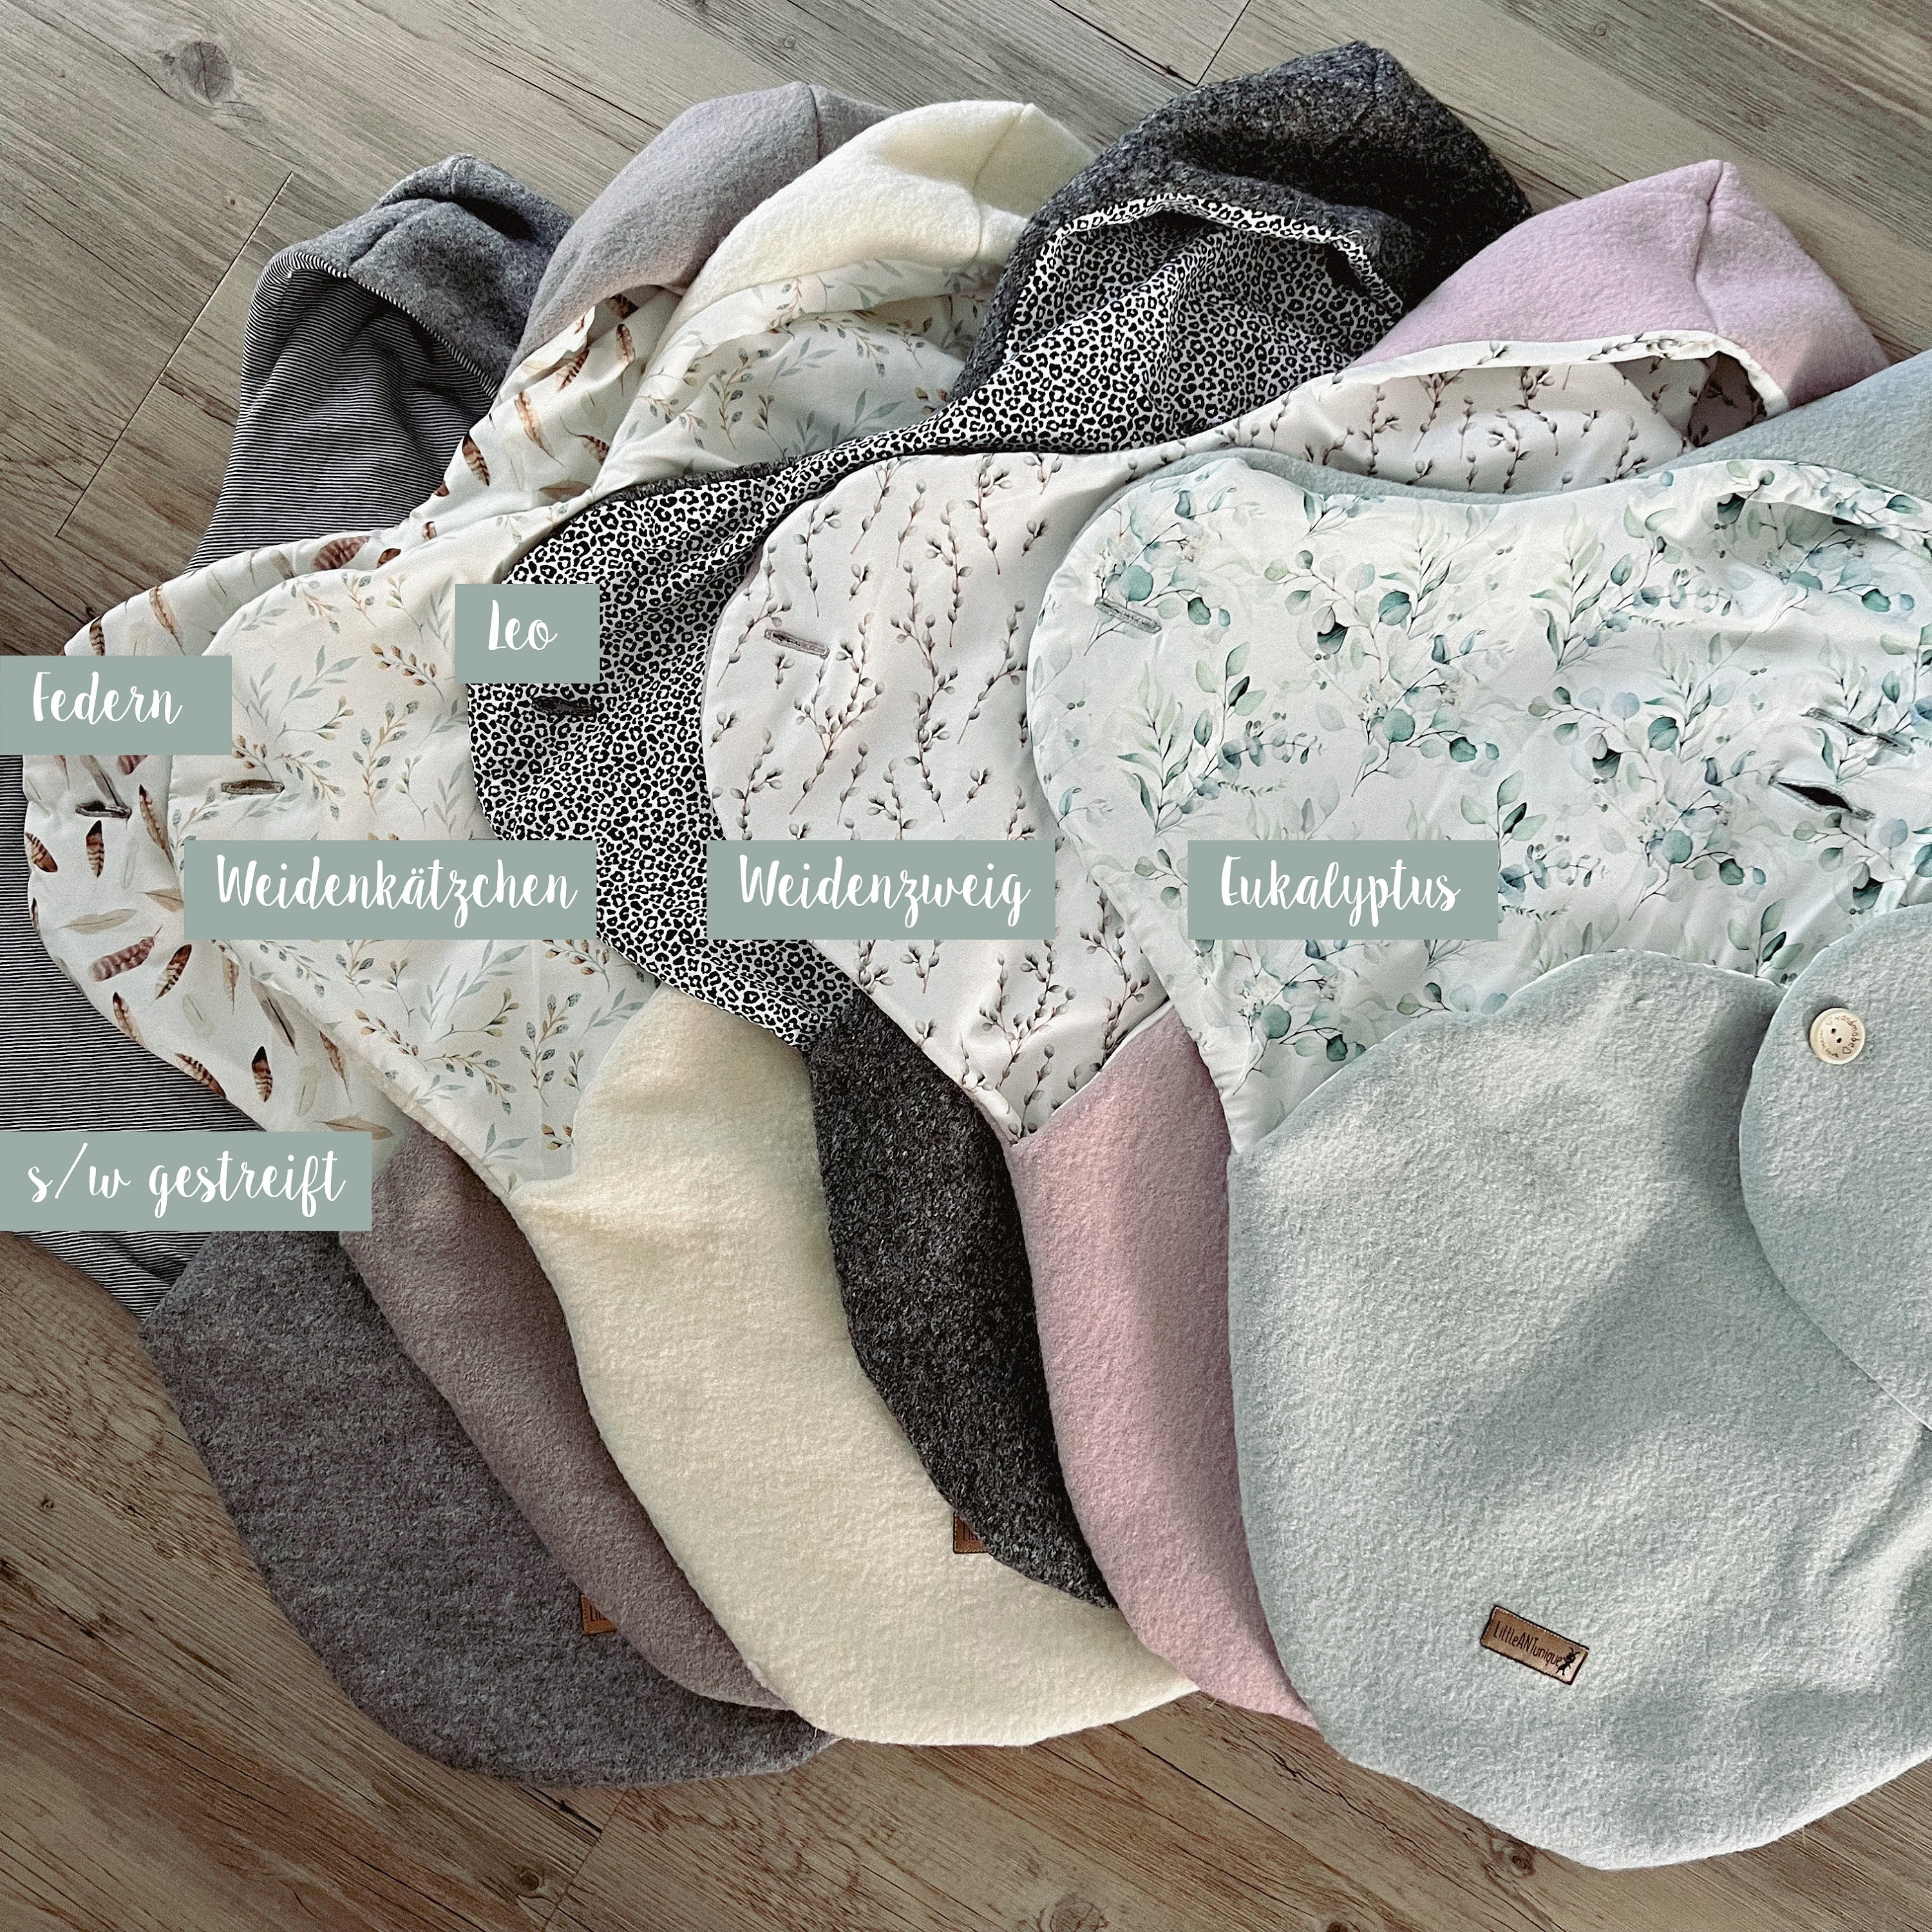 Einschlagdecke bzw. Pucksack für Babyschale mit Reißverschluss | Premium  Baumwolle